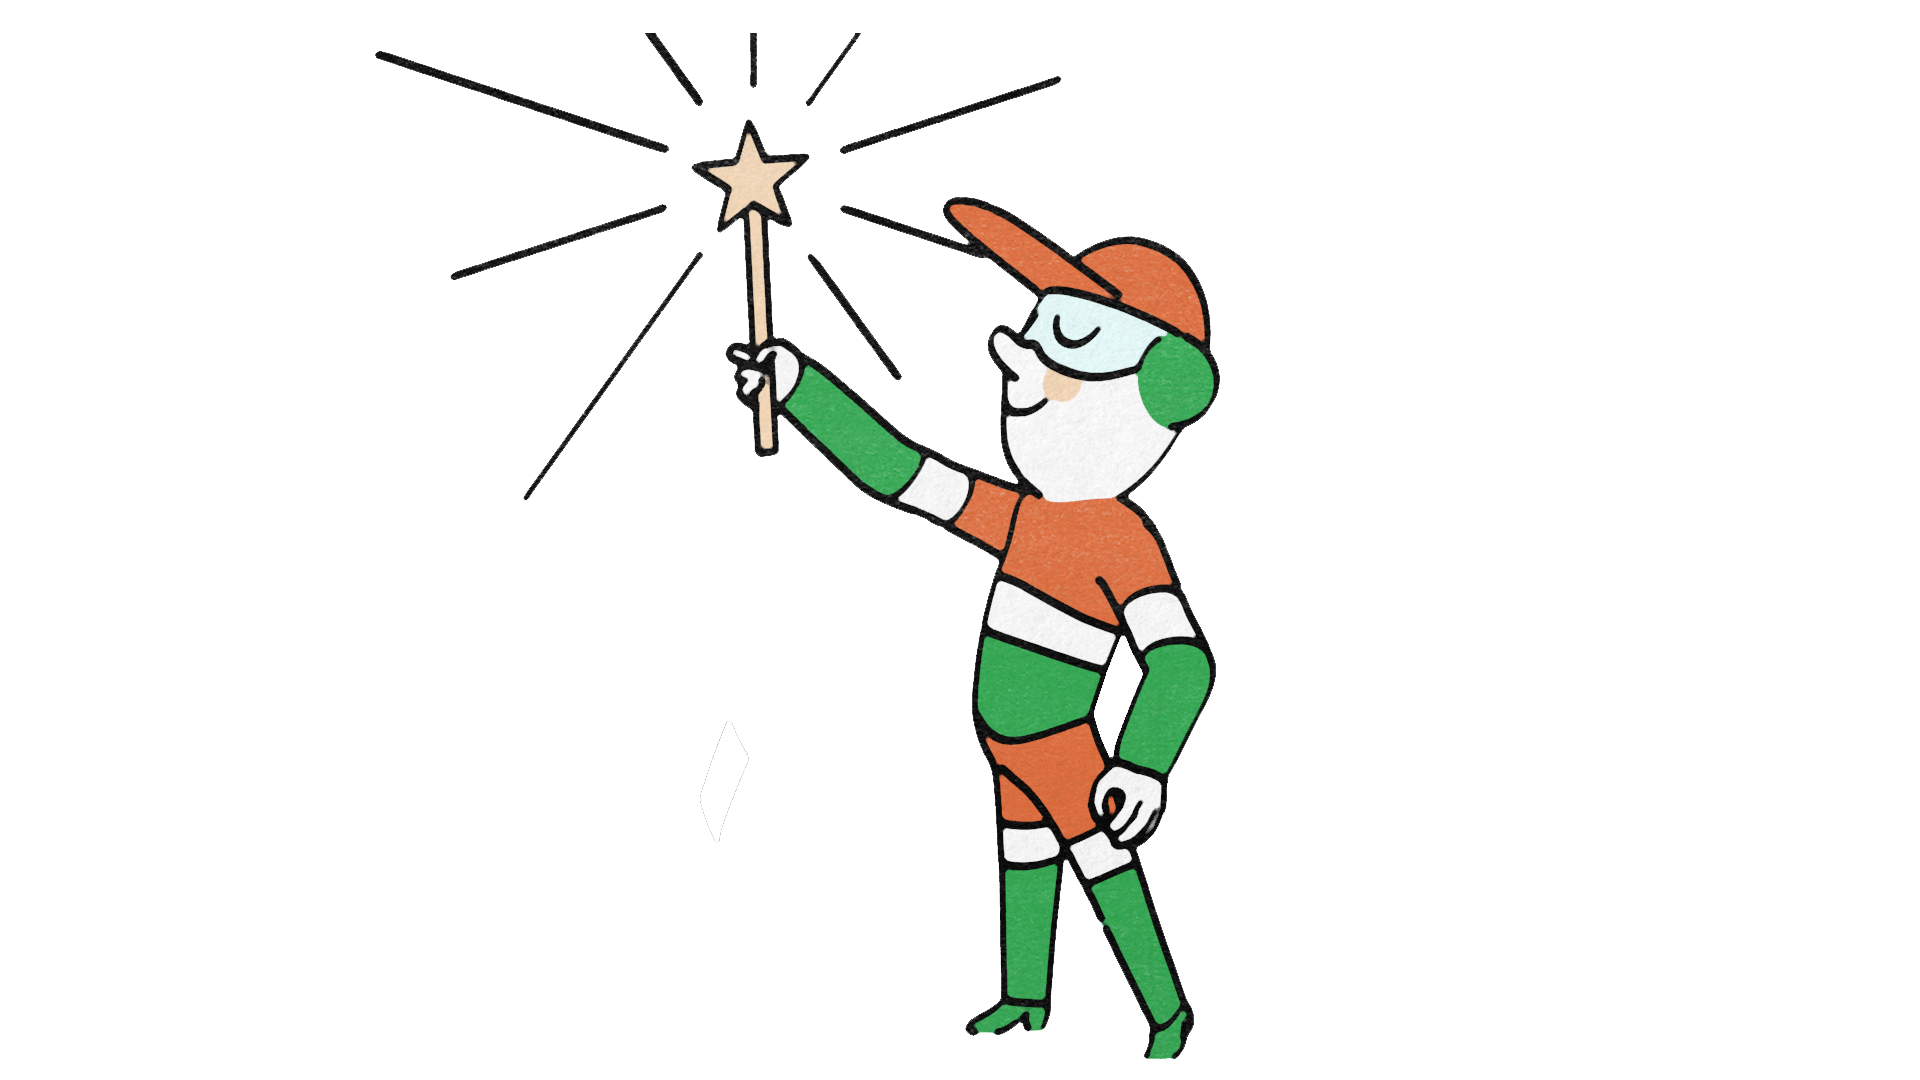 Visuel illustrant Sergio, la mascotte d'Envie, avec une baguette magique.